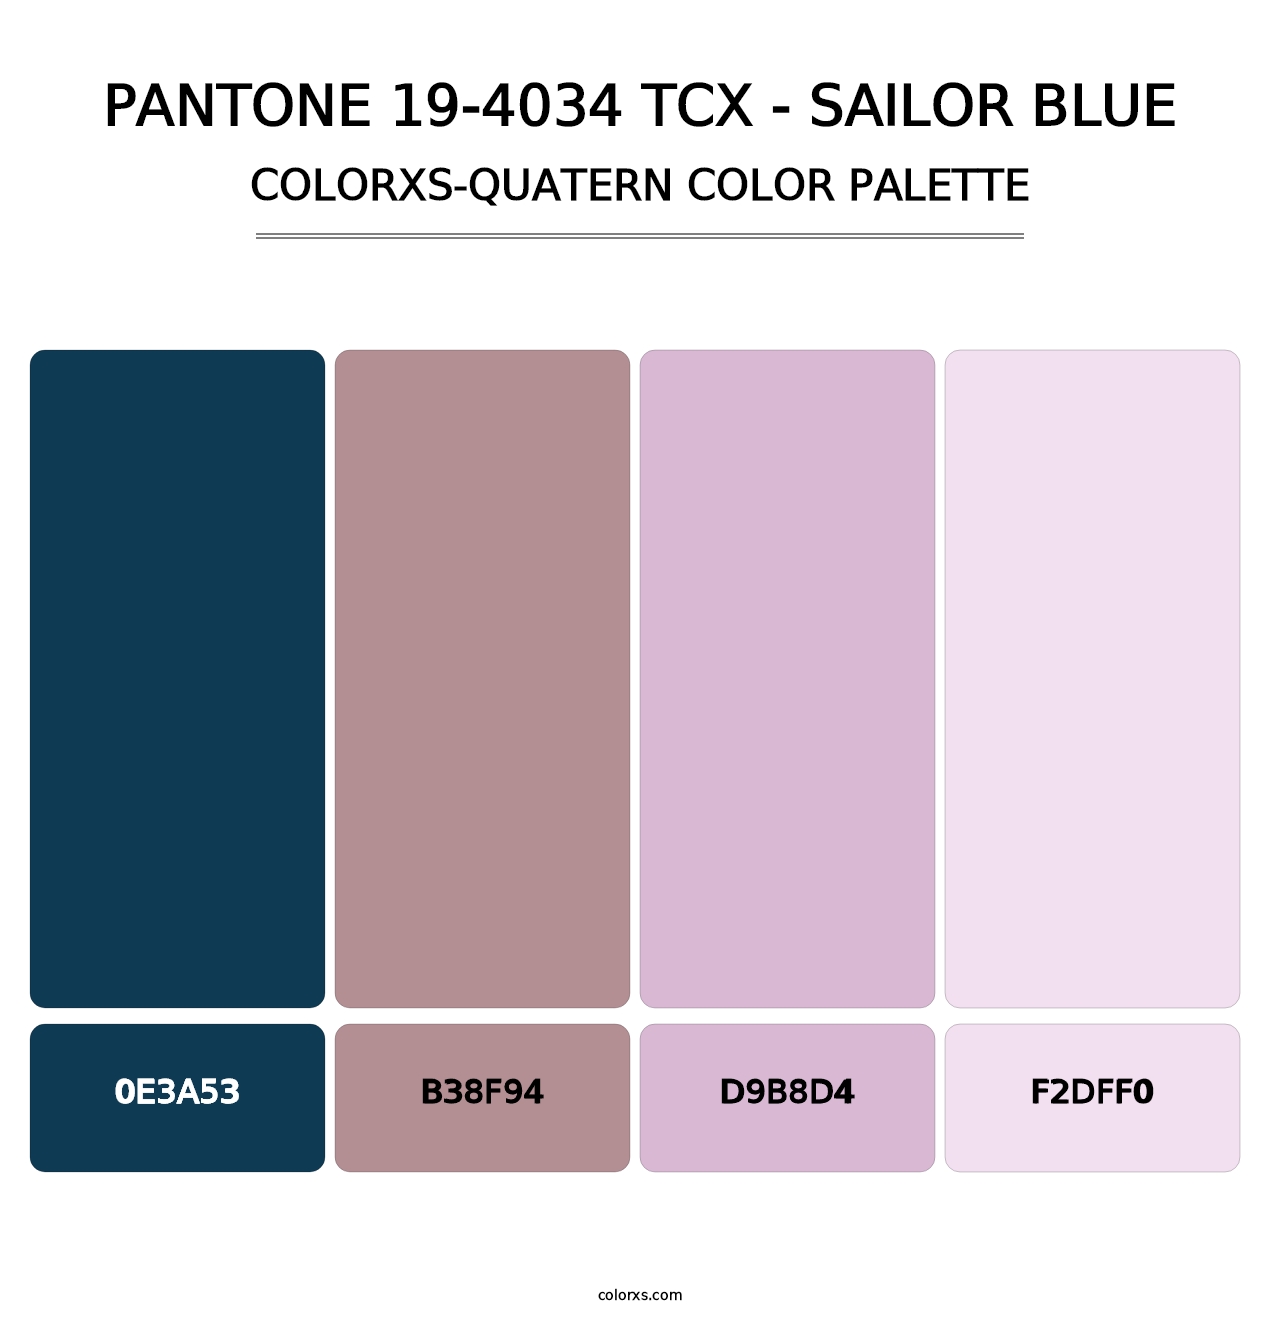 PANTONE 19-4034 TCX - Sailor Blue - Colorxs Quatern Palette